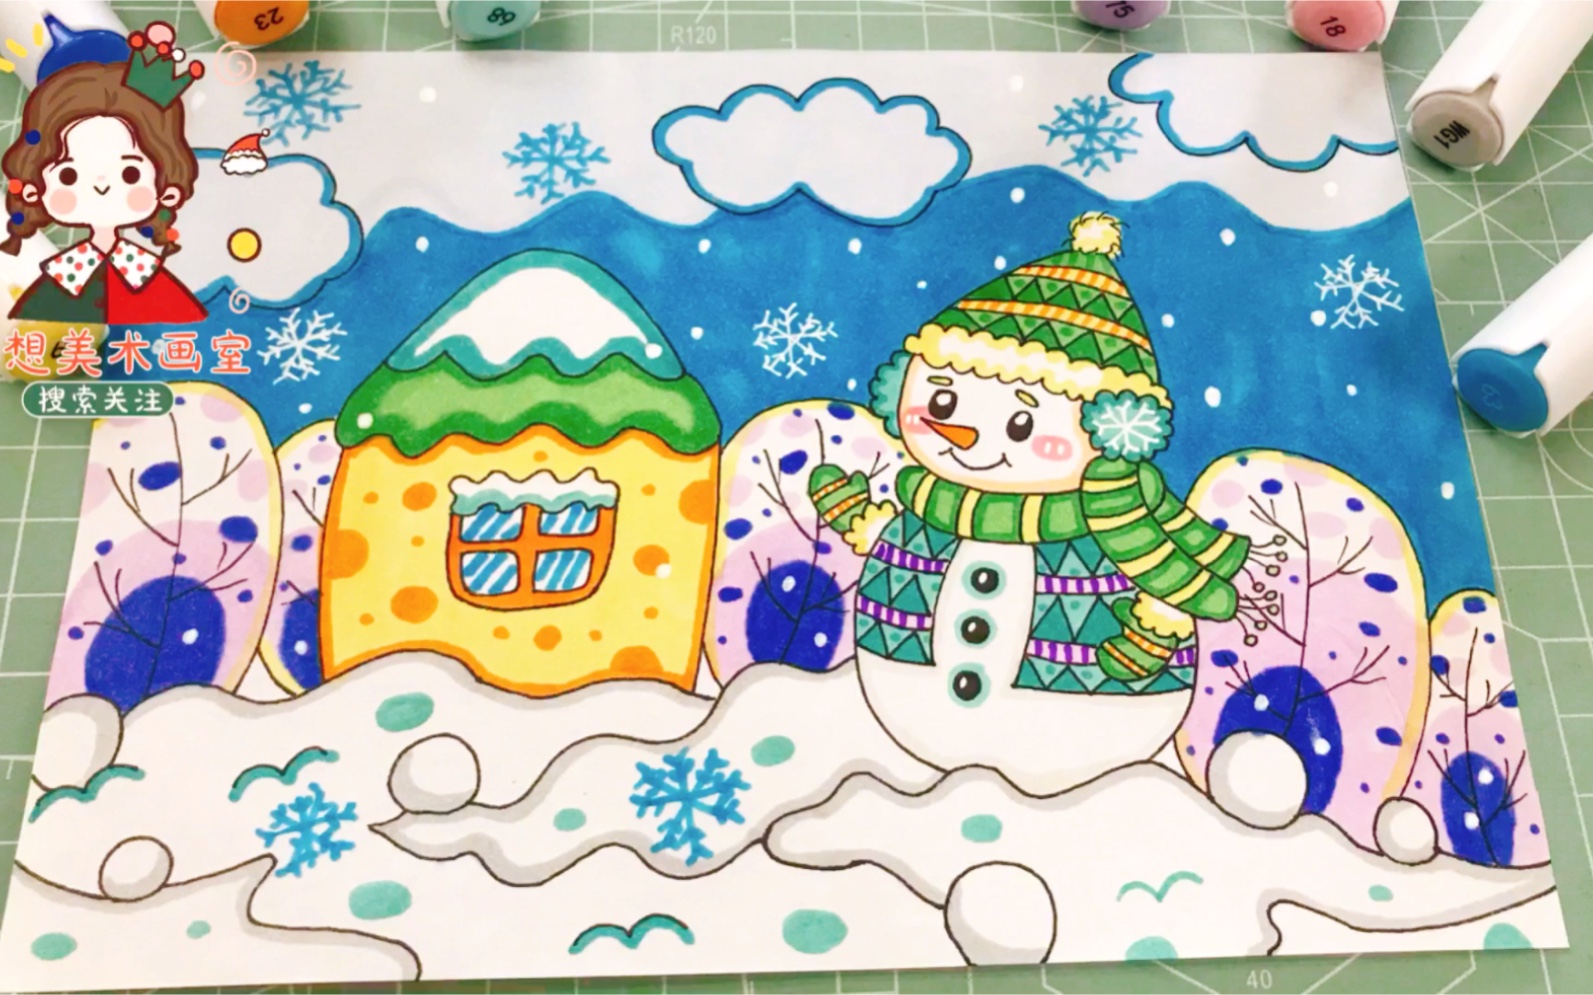 冬天来啦雪人儿童画教程,立冬主题简笔画,赶快帮孩子收藏起来吧!